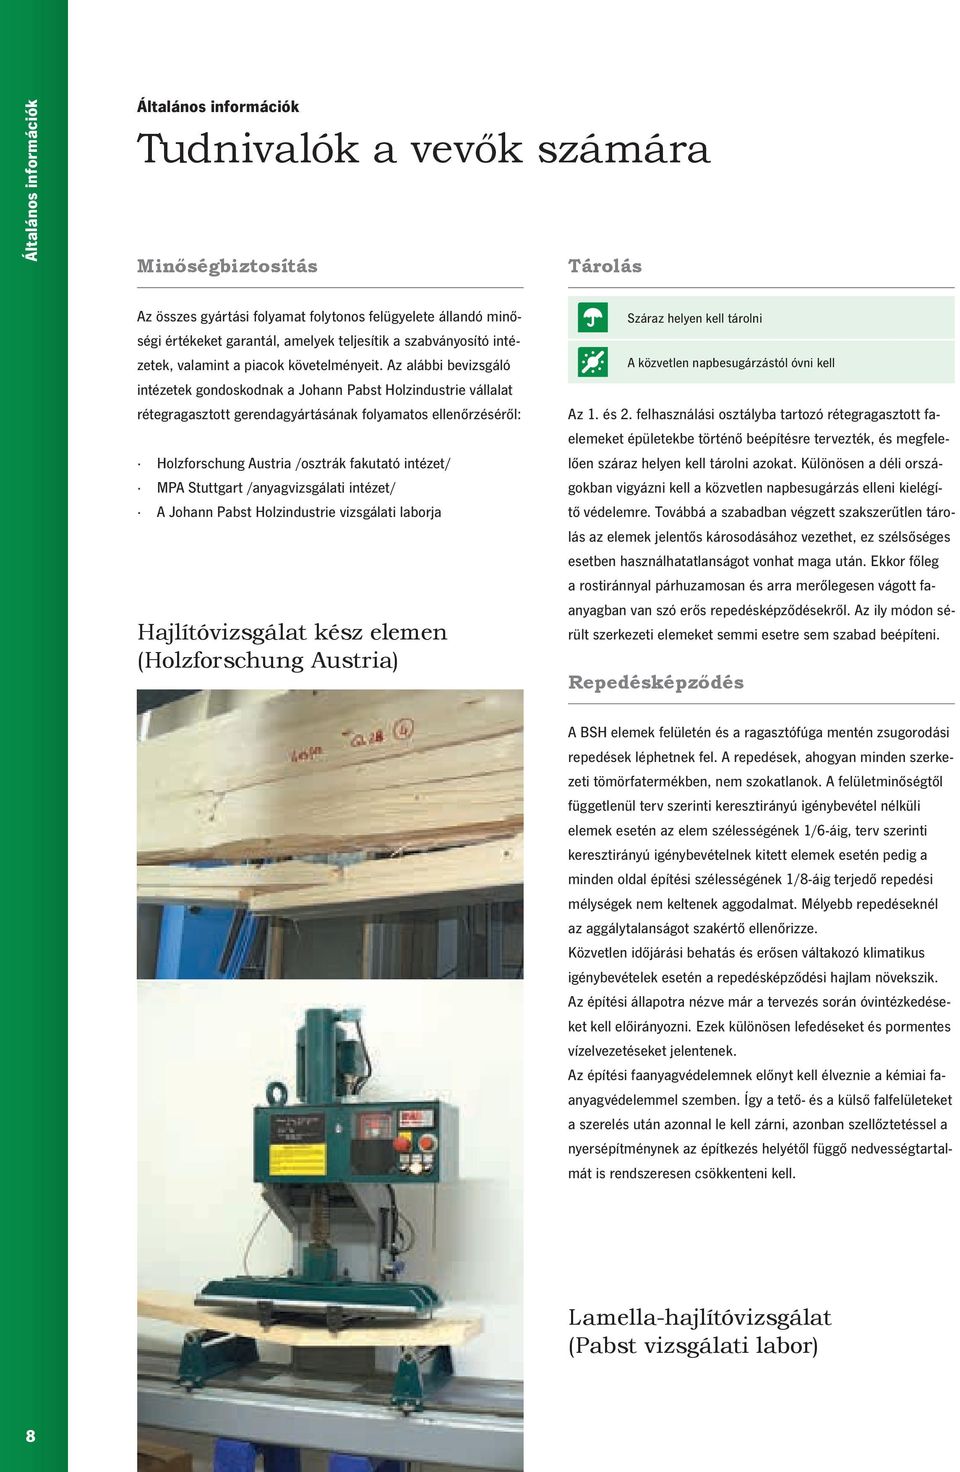 Az alábbi bevizsgáló intézetek gondoskodnak a Johann Pabst Holzindustrie vállalat rétegragasztott gerendagyártásának folyamatos ellenőrzéséről: Holzforschung Austria /osztrák fakutató intézet/ MPA